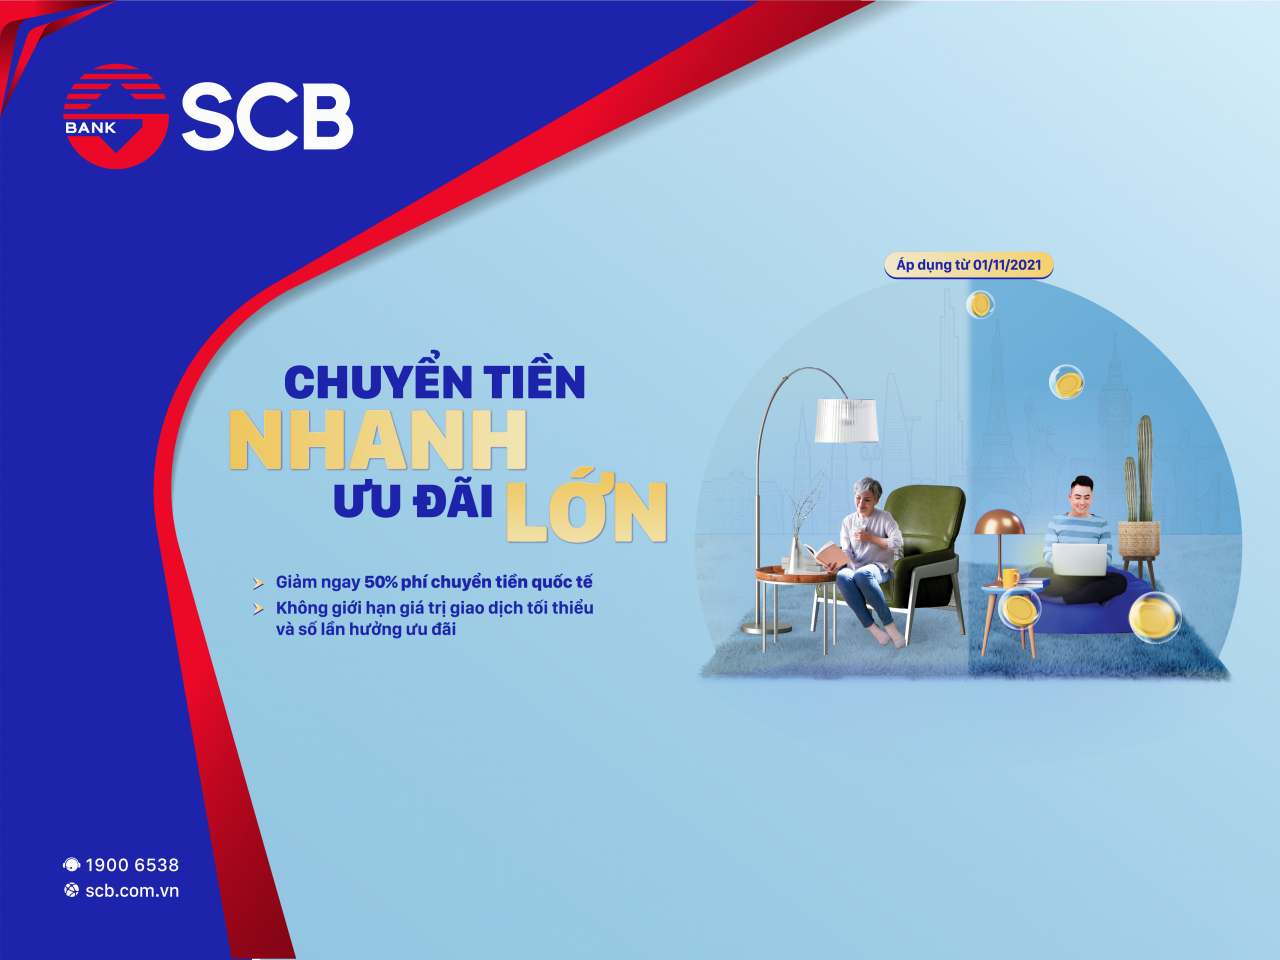 SCB triển khai chương trình “Chuyển tiền nhanh – Ưu đãi lớn” cùng SCB